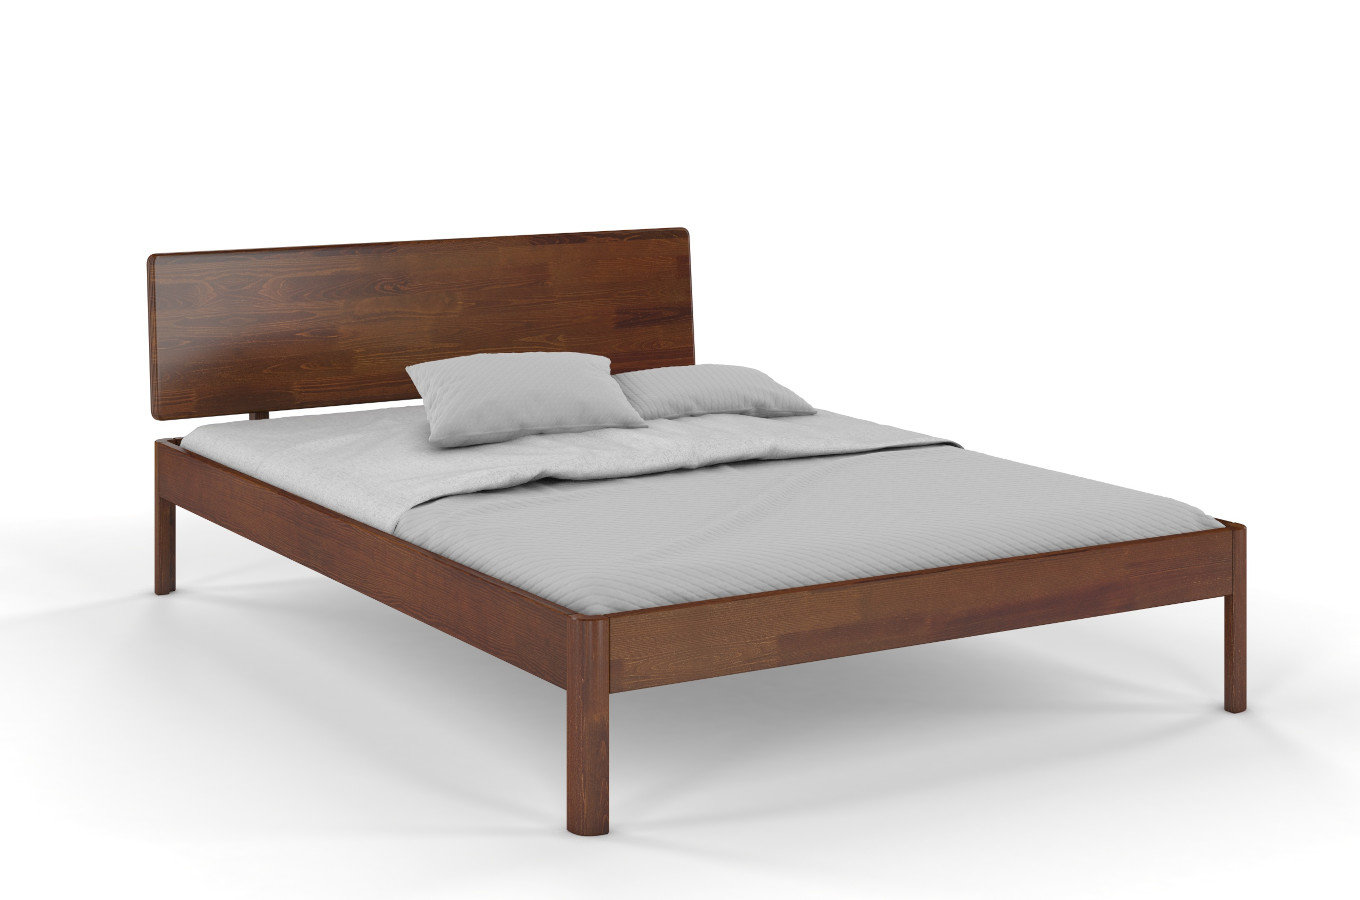 Dřevěná postel Visby AMMER z borovice / 180x200 cm, barva ořech